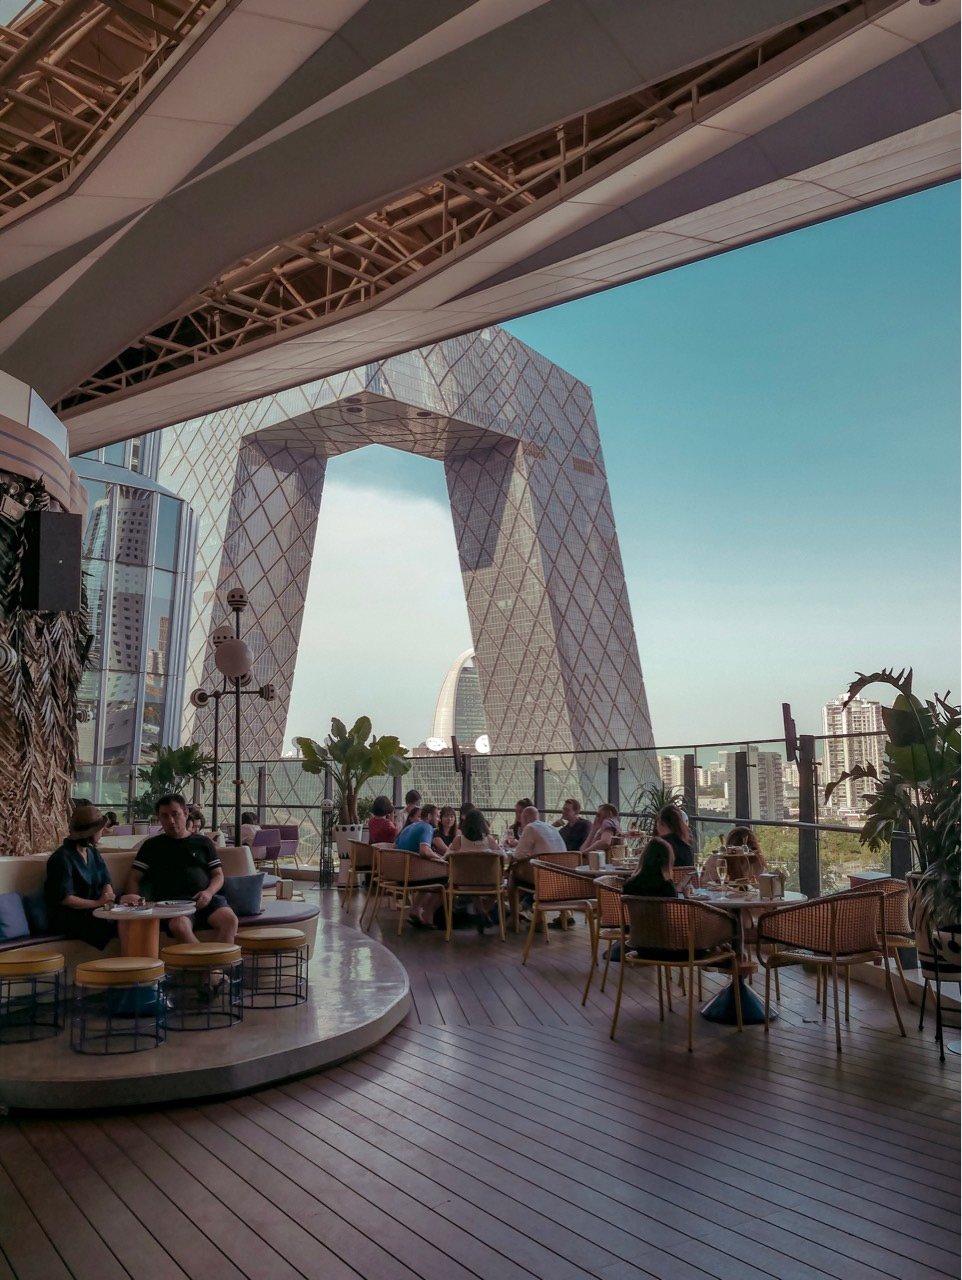 【北京】国贸观景最佳的网红露台餐厅